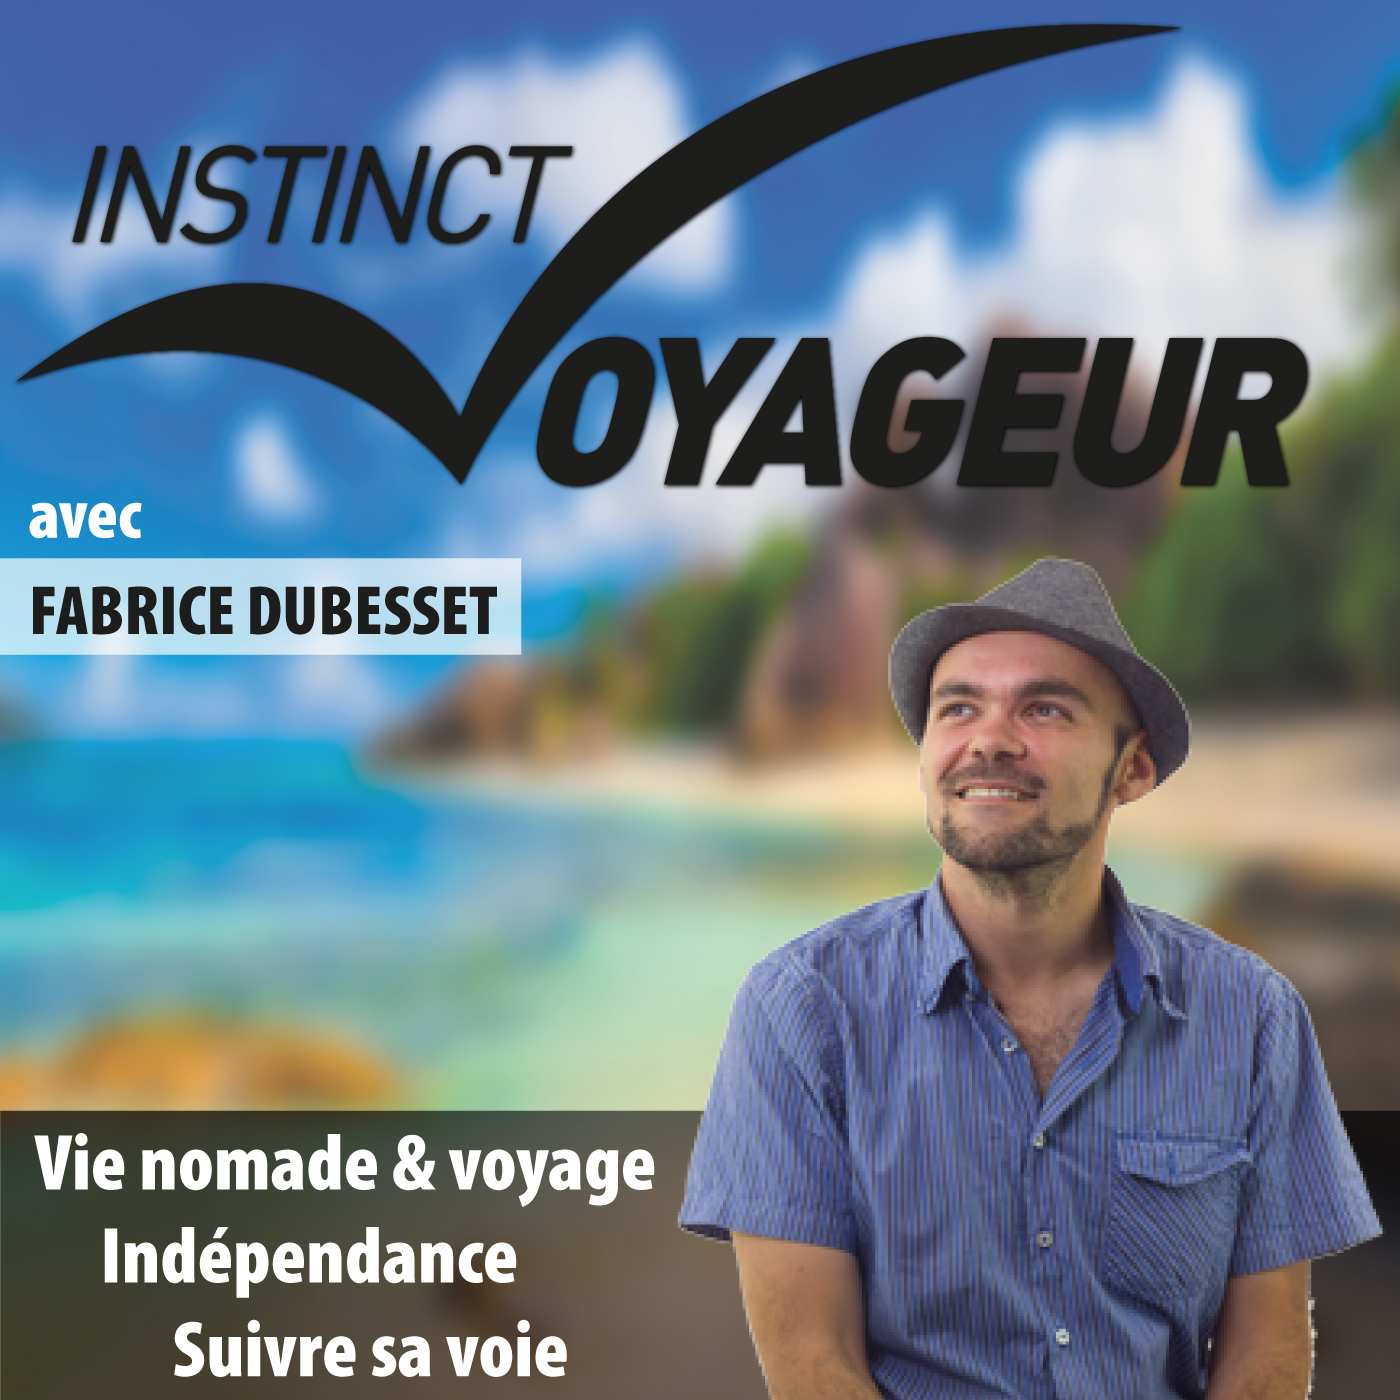 IVCAST 22 : Voyageur aveugle, l’histoire de Jean-Pierre Brouillaud